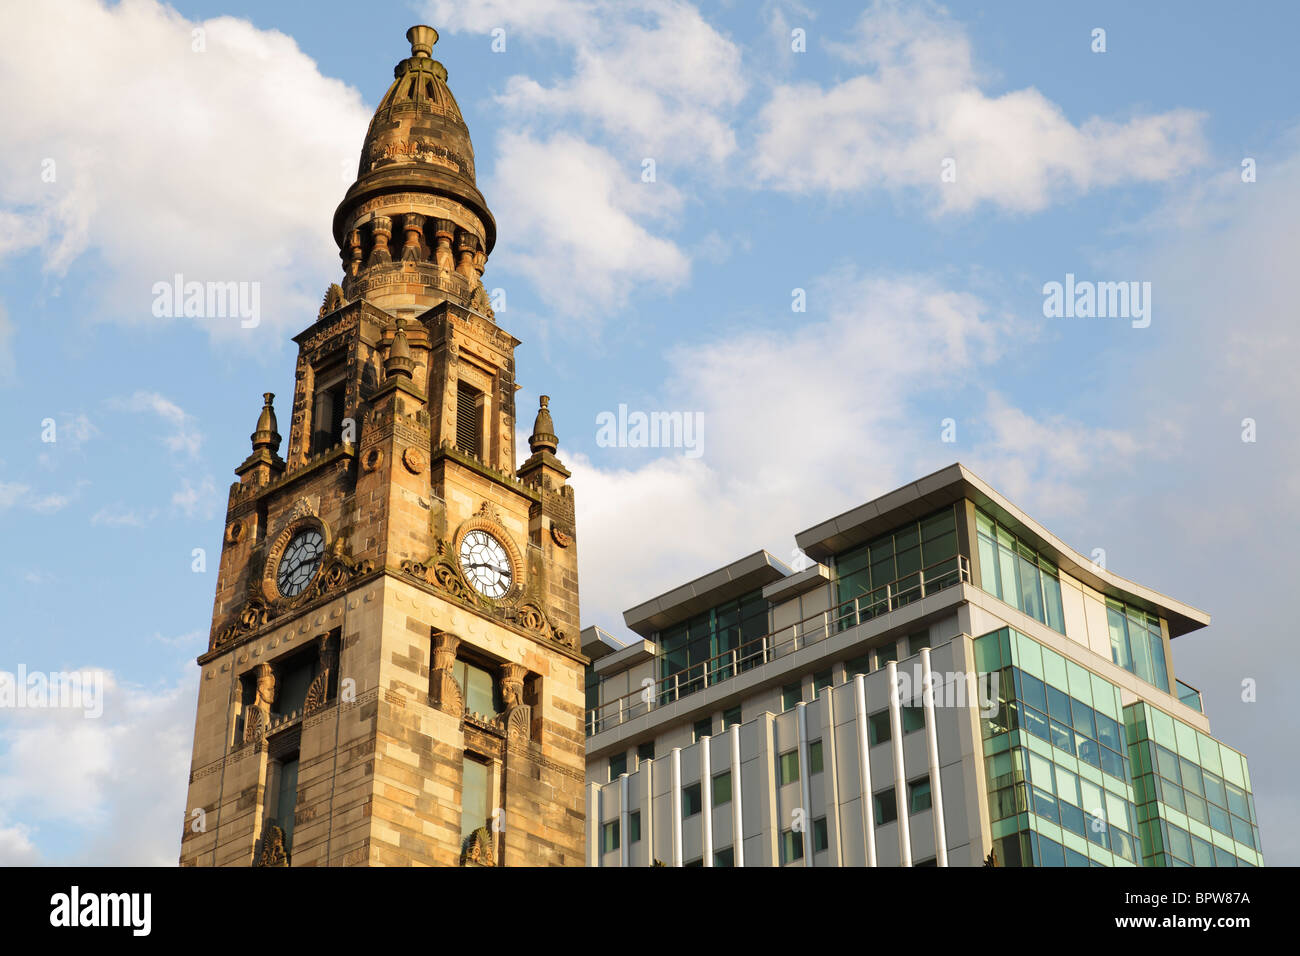 St. Vincent Street Church Turm entworfen vom Architekten Alexander Greek Thomson, St. Vincent Street, Glasgow, Schottland, Großbritannien Stockfoto